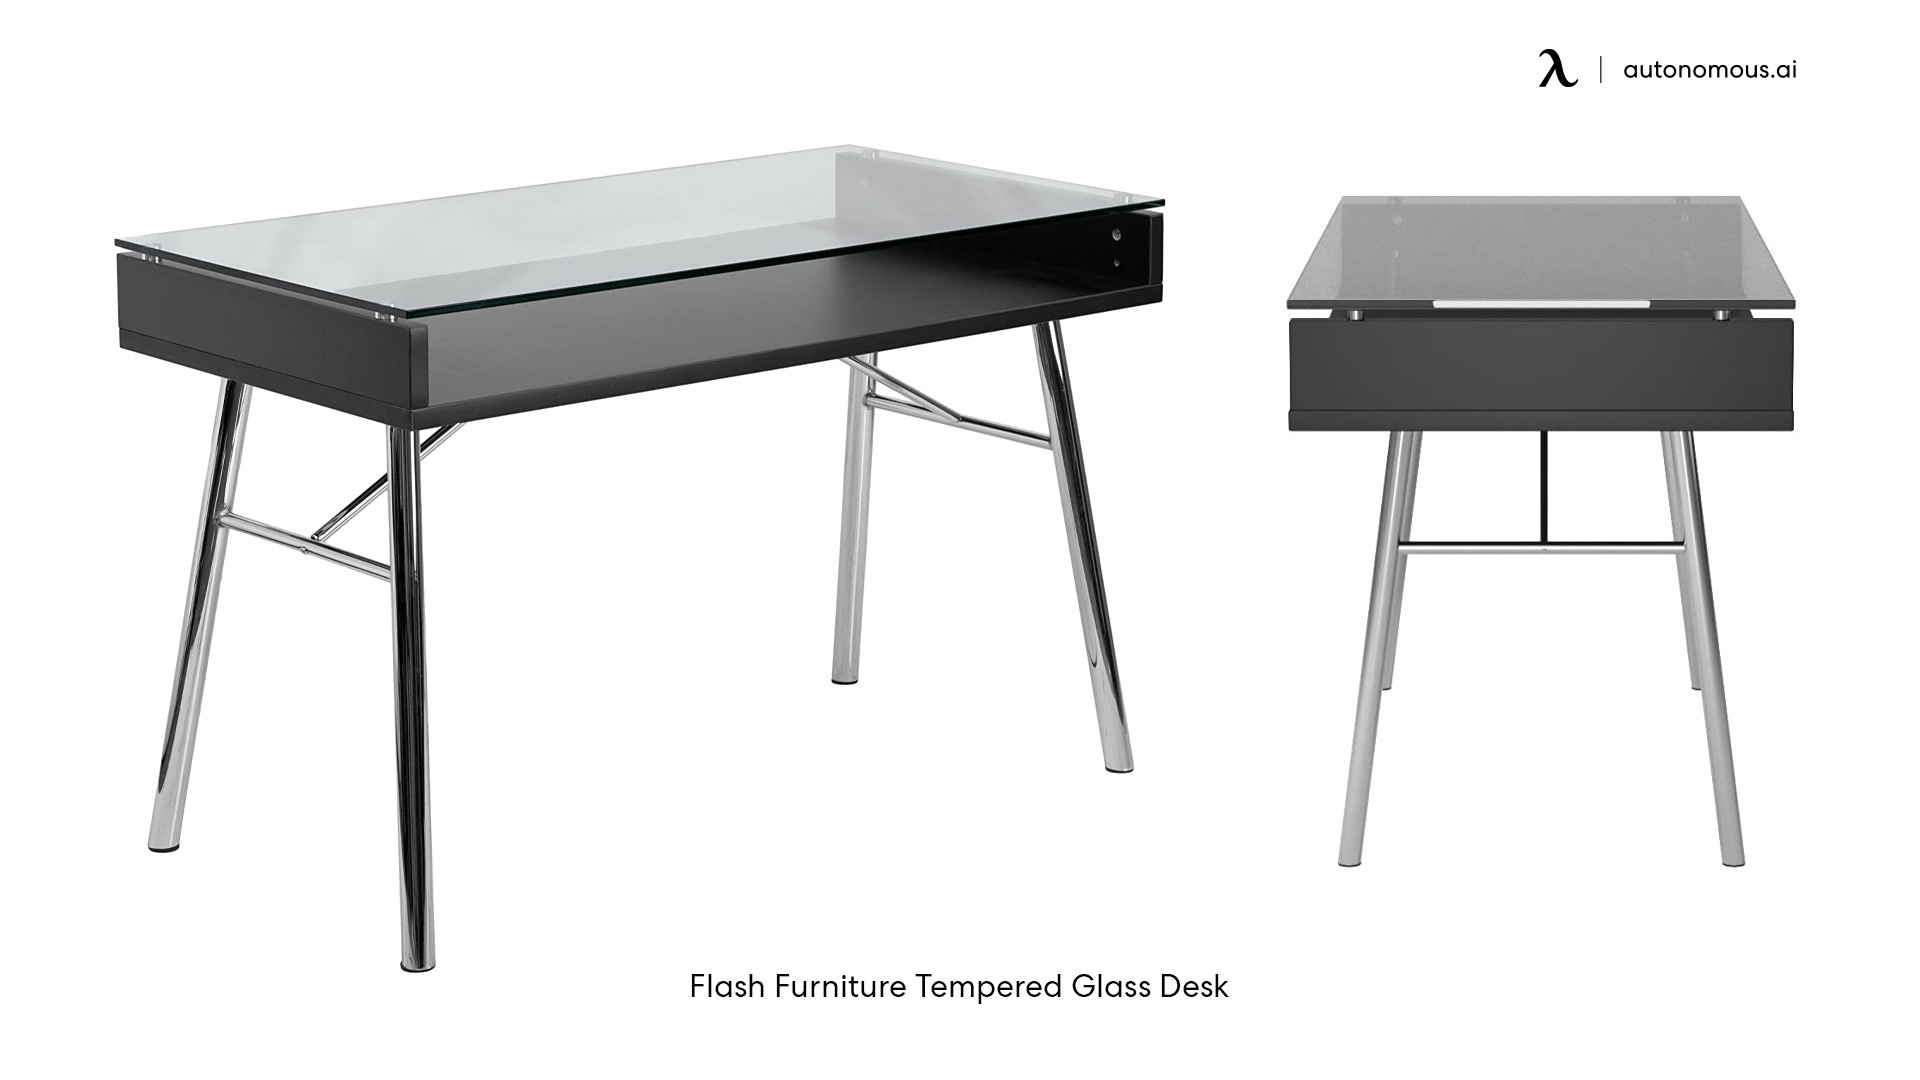 Flash Furniture Tempered Glass Desk